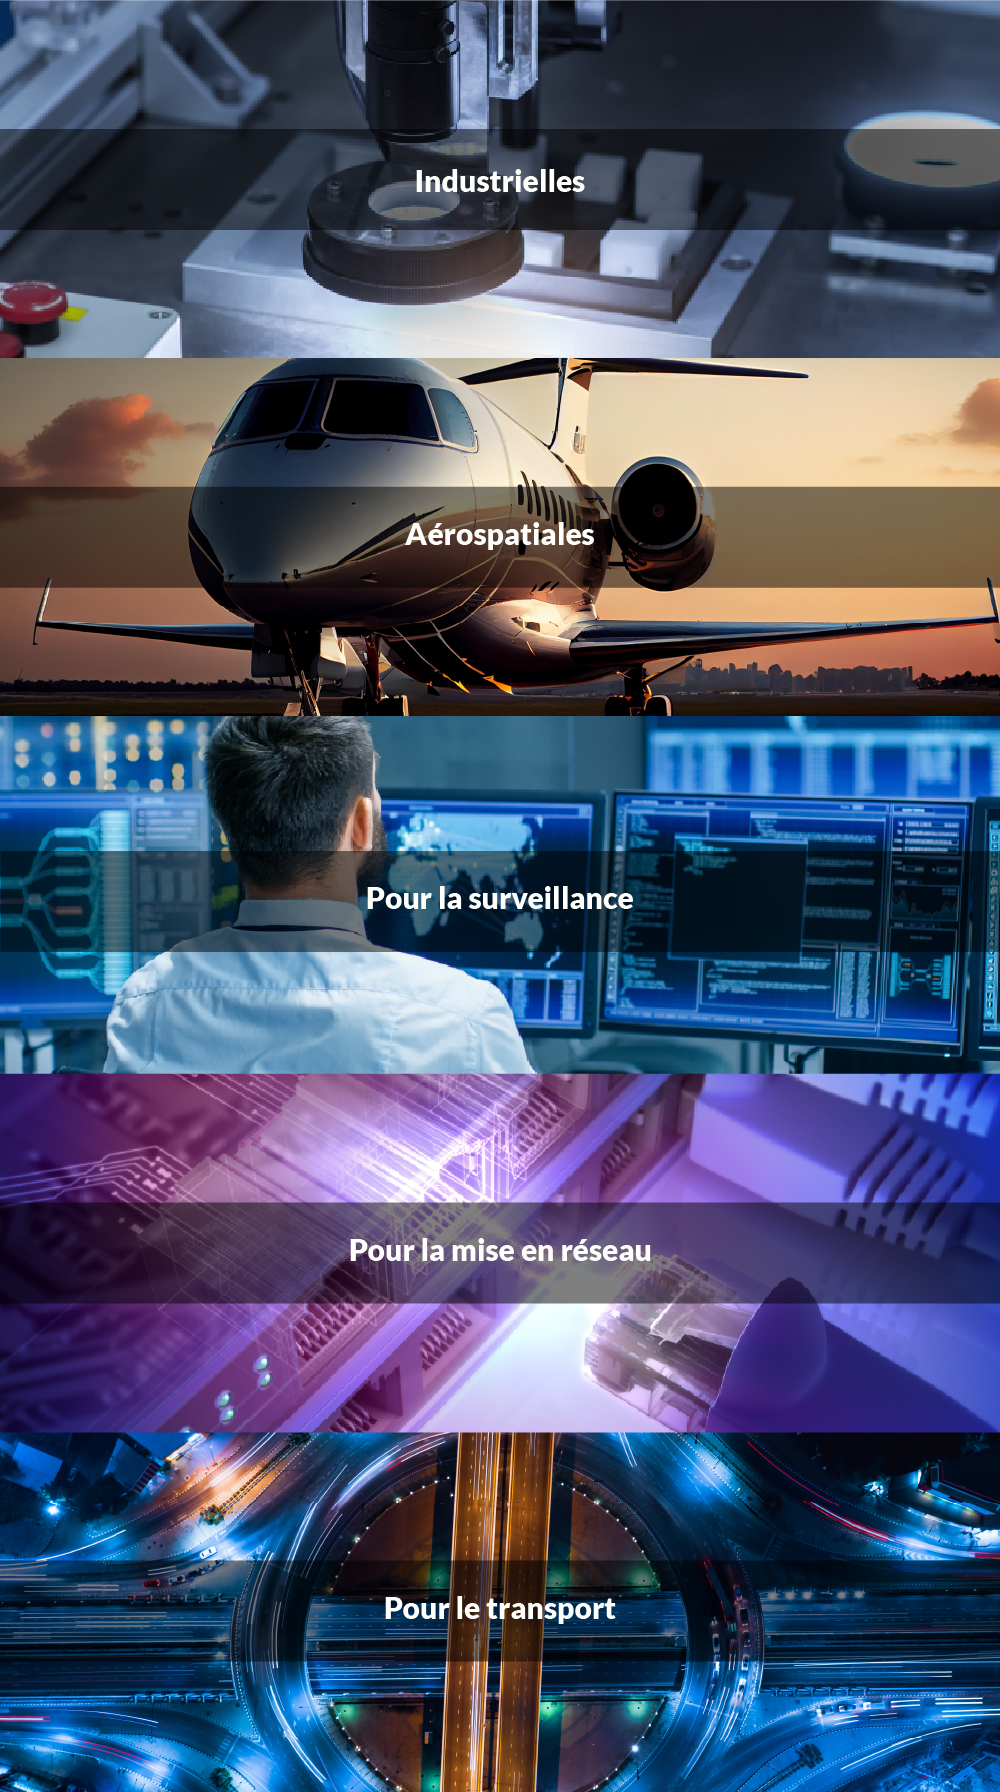 Industrielles / Aérospatiales / Pour la surveillance / Pour la mise en réseau / Pour le transport